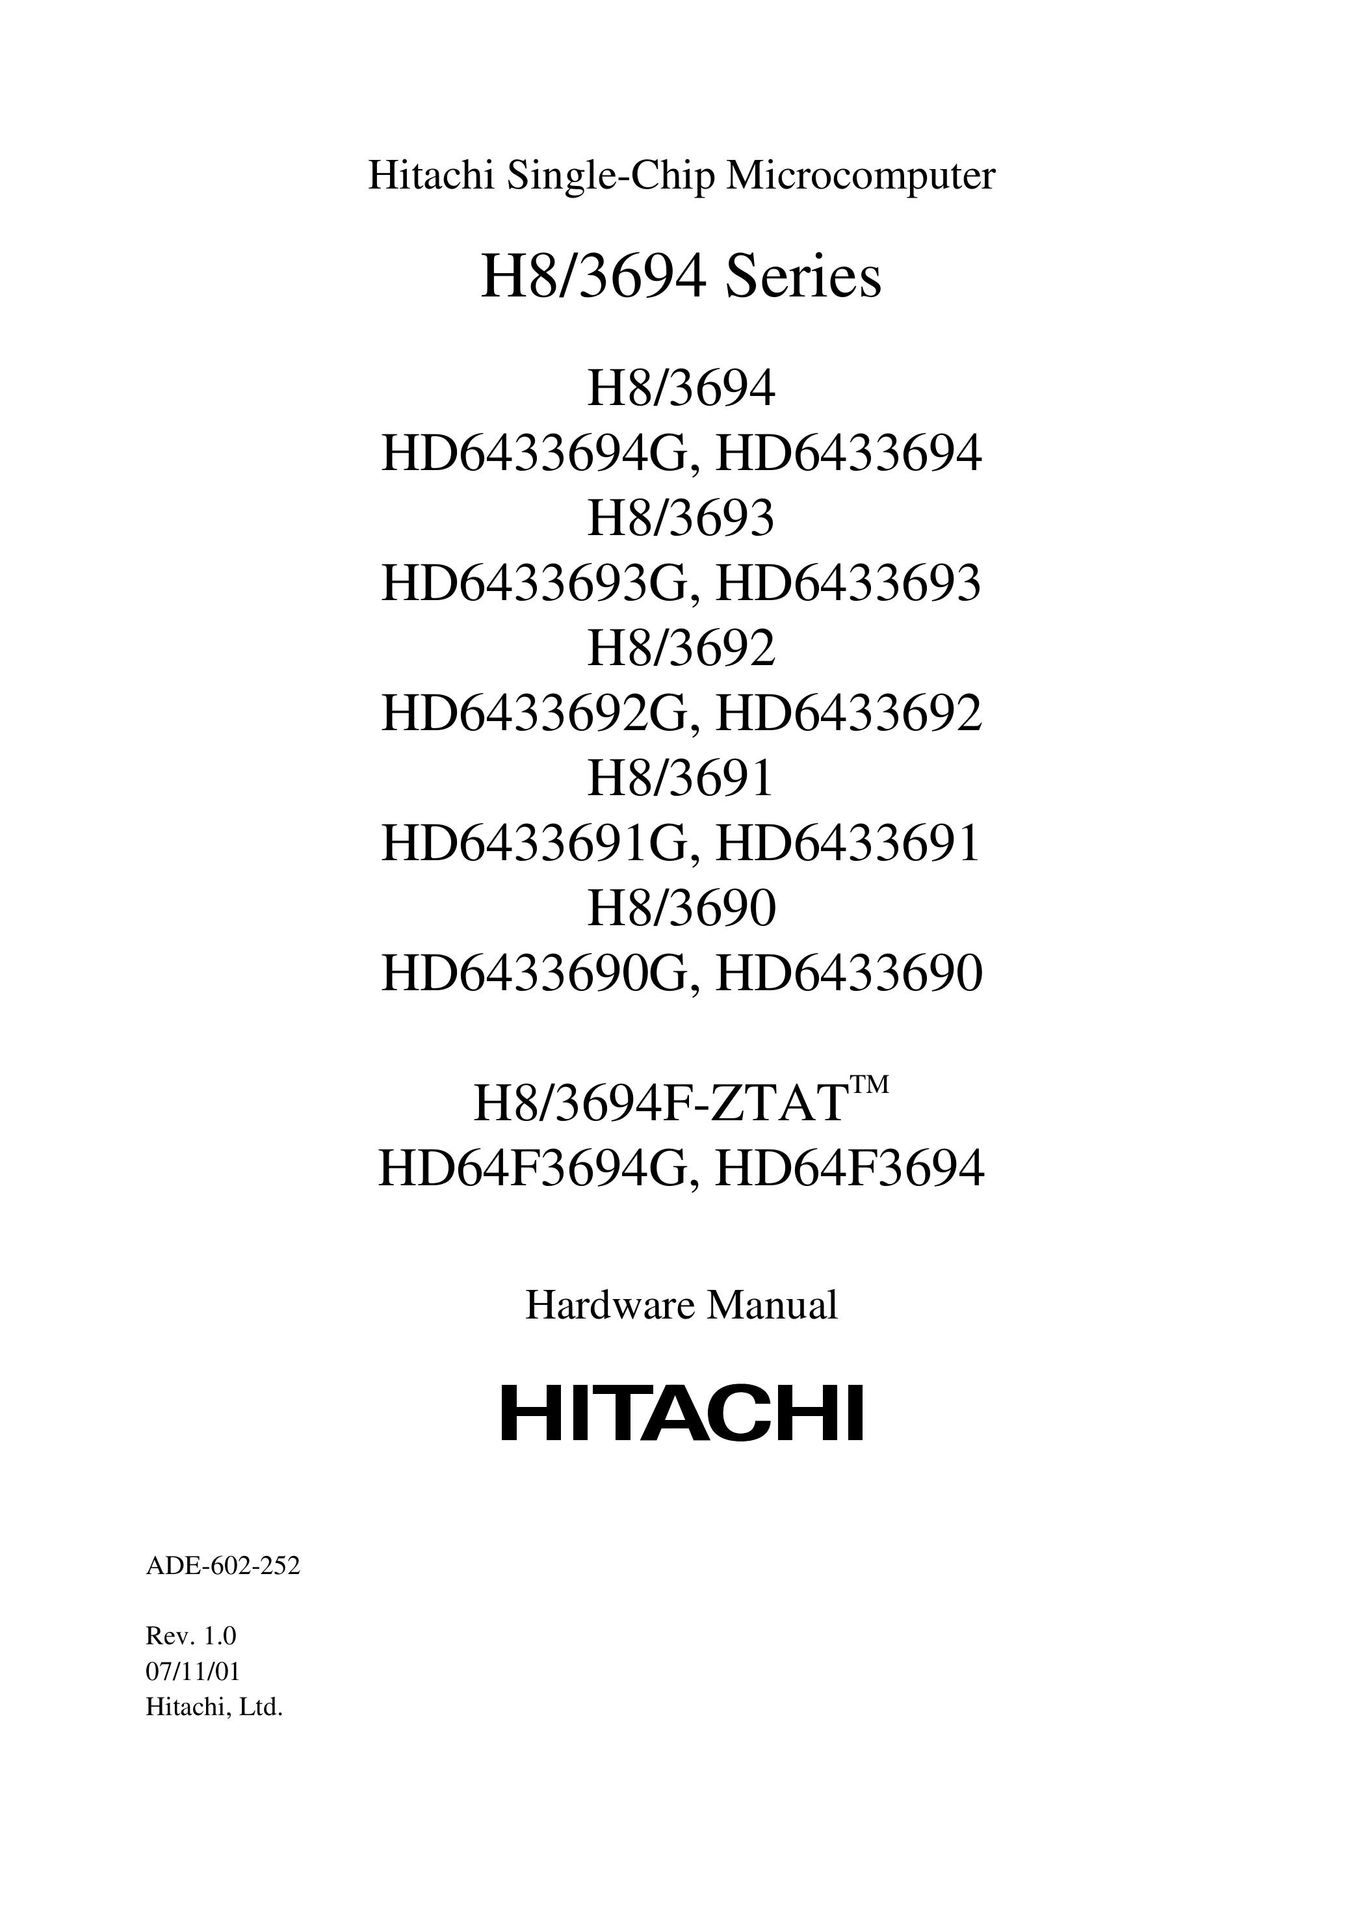 Hitachi H8/3692 TV Mount User Manual